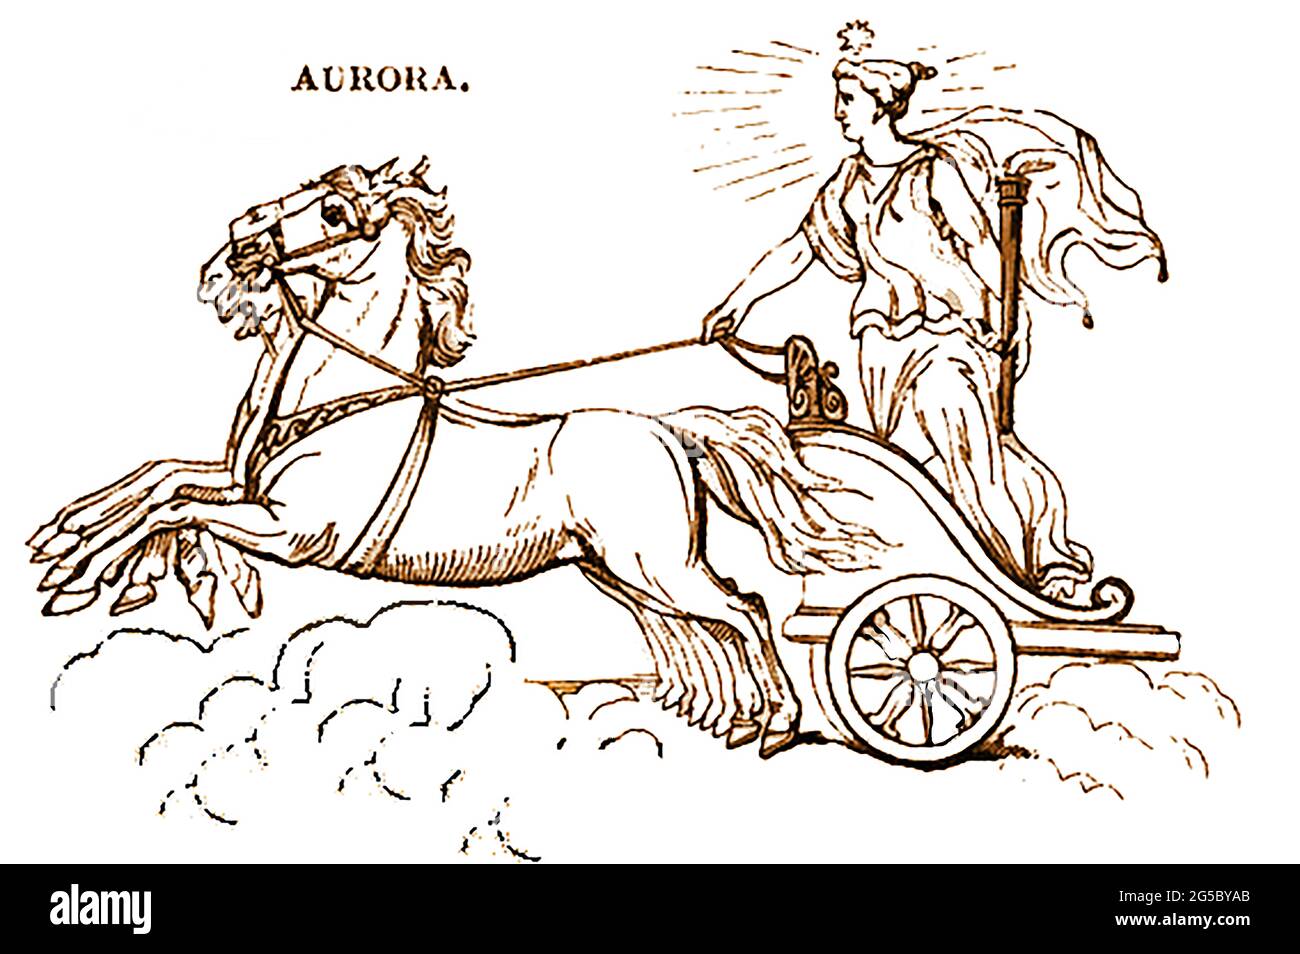 Une représentation en 1839 de la figure mythologique Aurora la déesse de l'aube dans la mythologie grecque et romaine . Elle a évolué du nom d'une ancienne déesse indo-européenne de l'aube, Hausos. Dans la poésie grecque, Aurōra était la mère de l'Anemoi (les vents), et la progéniture d'Astraeus, le père des étoiles. Banque D'Images